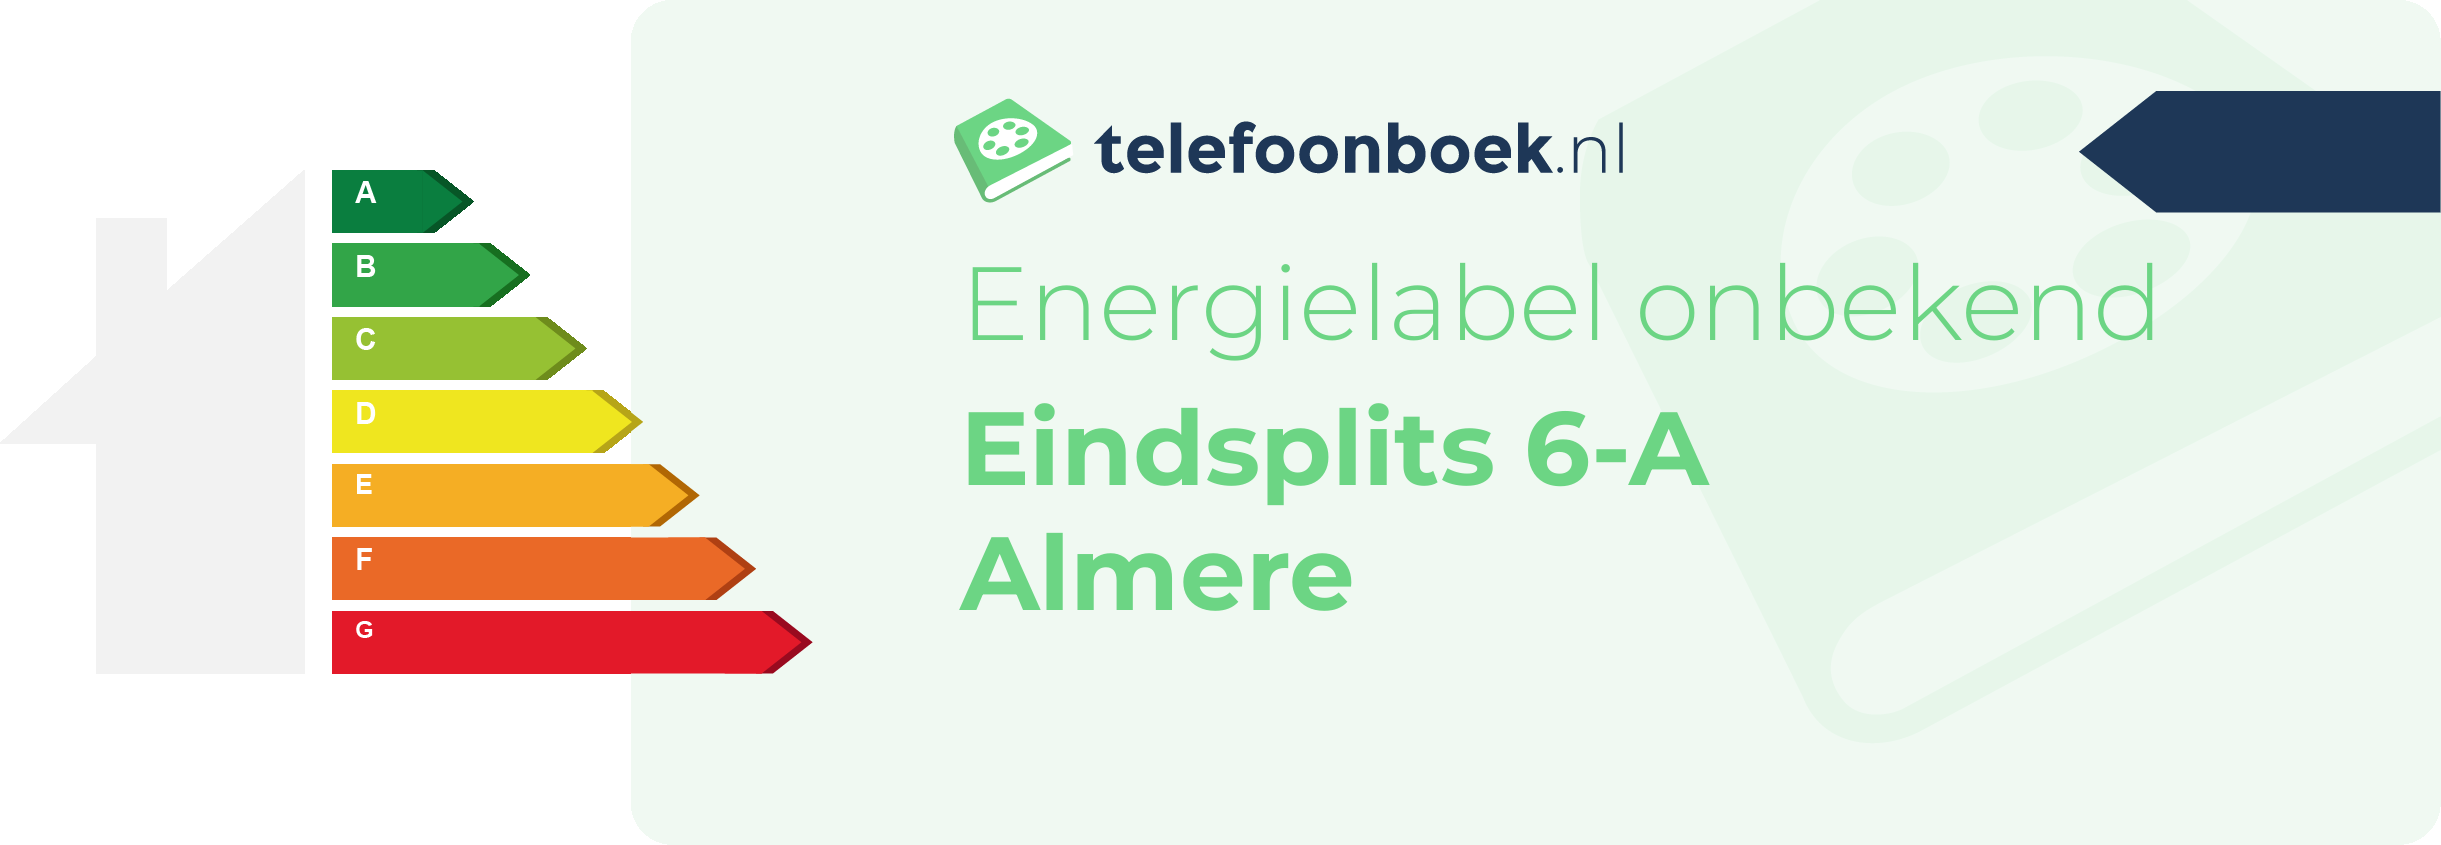 Energielabel Eindsplits 6-A Almere